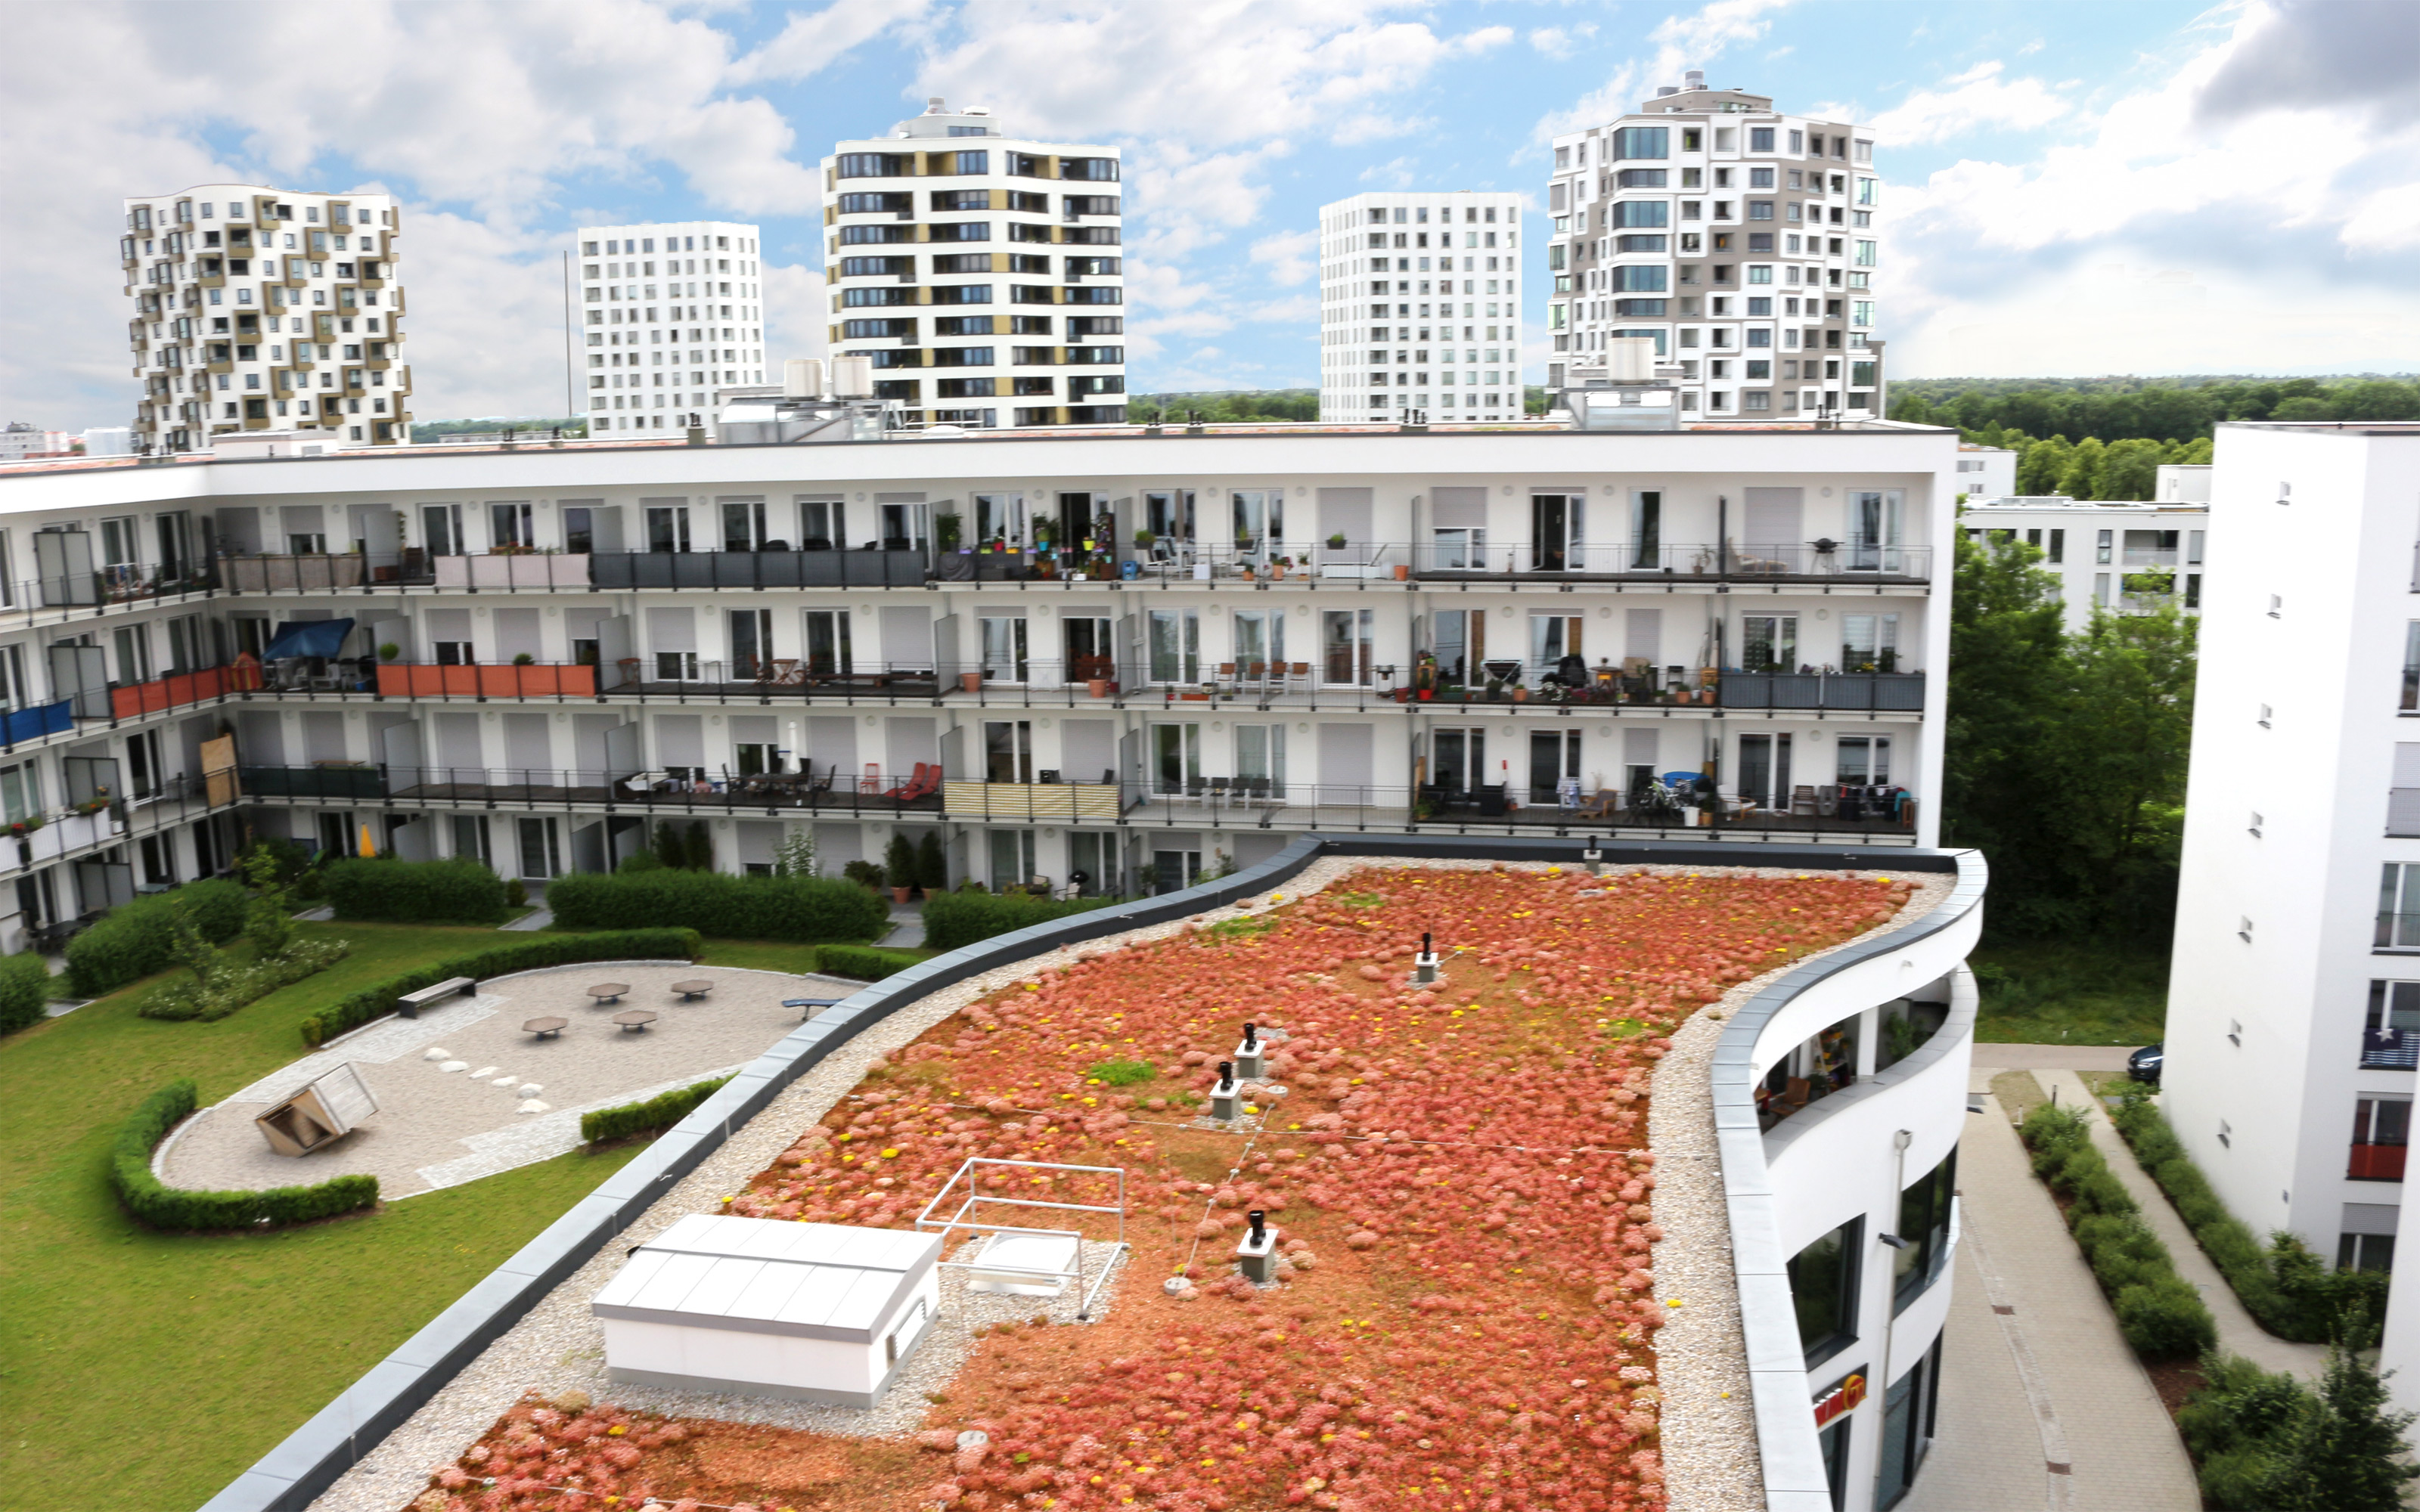 Blick von oben auf ein Sedumdach, Rasenflächen und einen Spielplatz, umgeben von hohen Mehrfamilienhäusern.